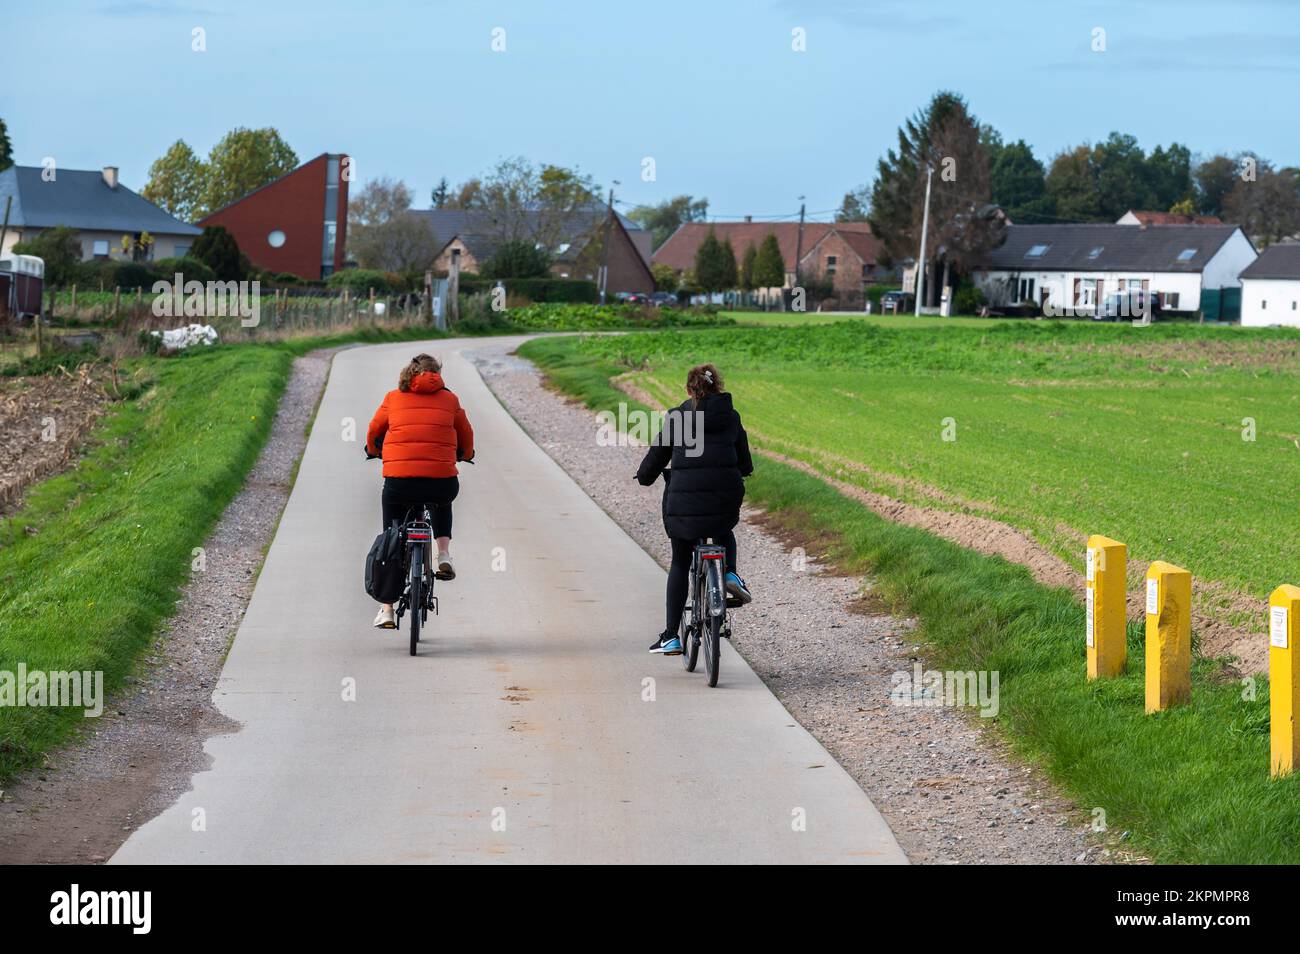 Asse, Regione del Brabante Fiammingo, Belgio - 10 20 2022 - Coppia guidando la bici attraverso i campi della campagna fiamminga Foto Stock